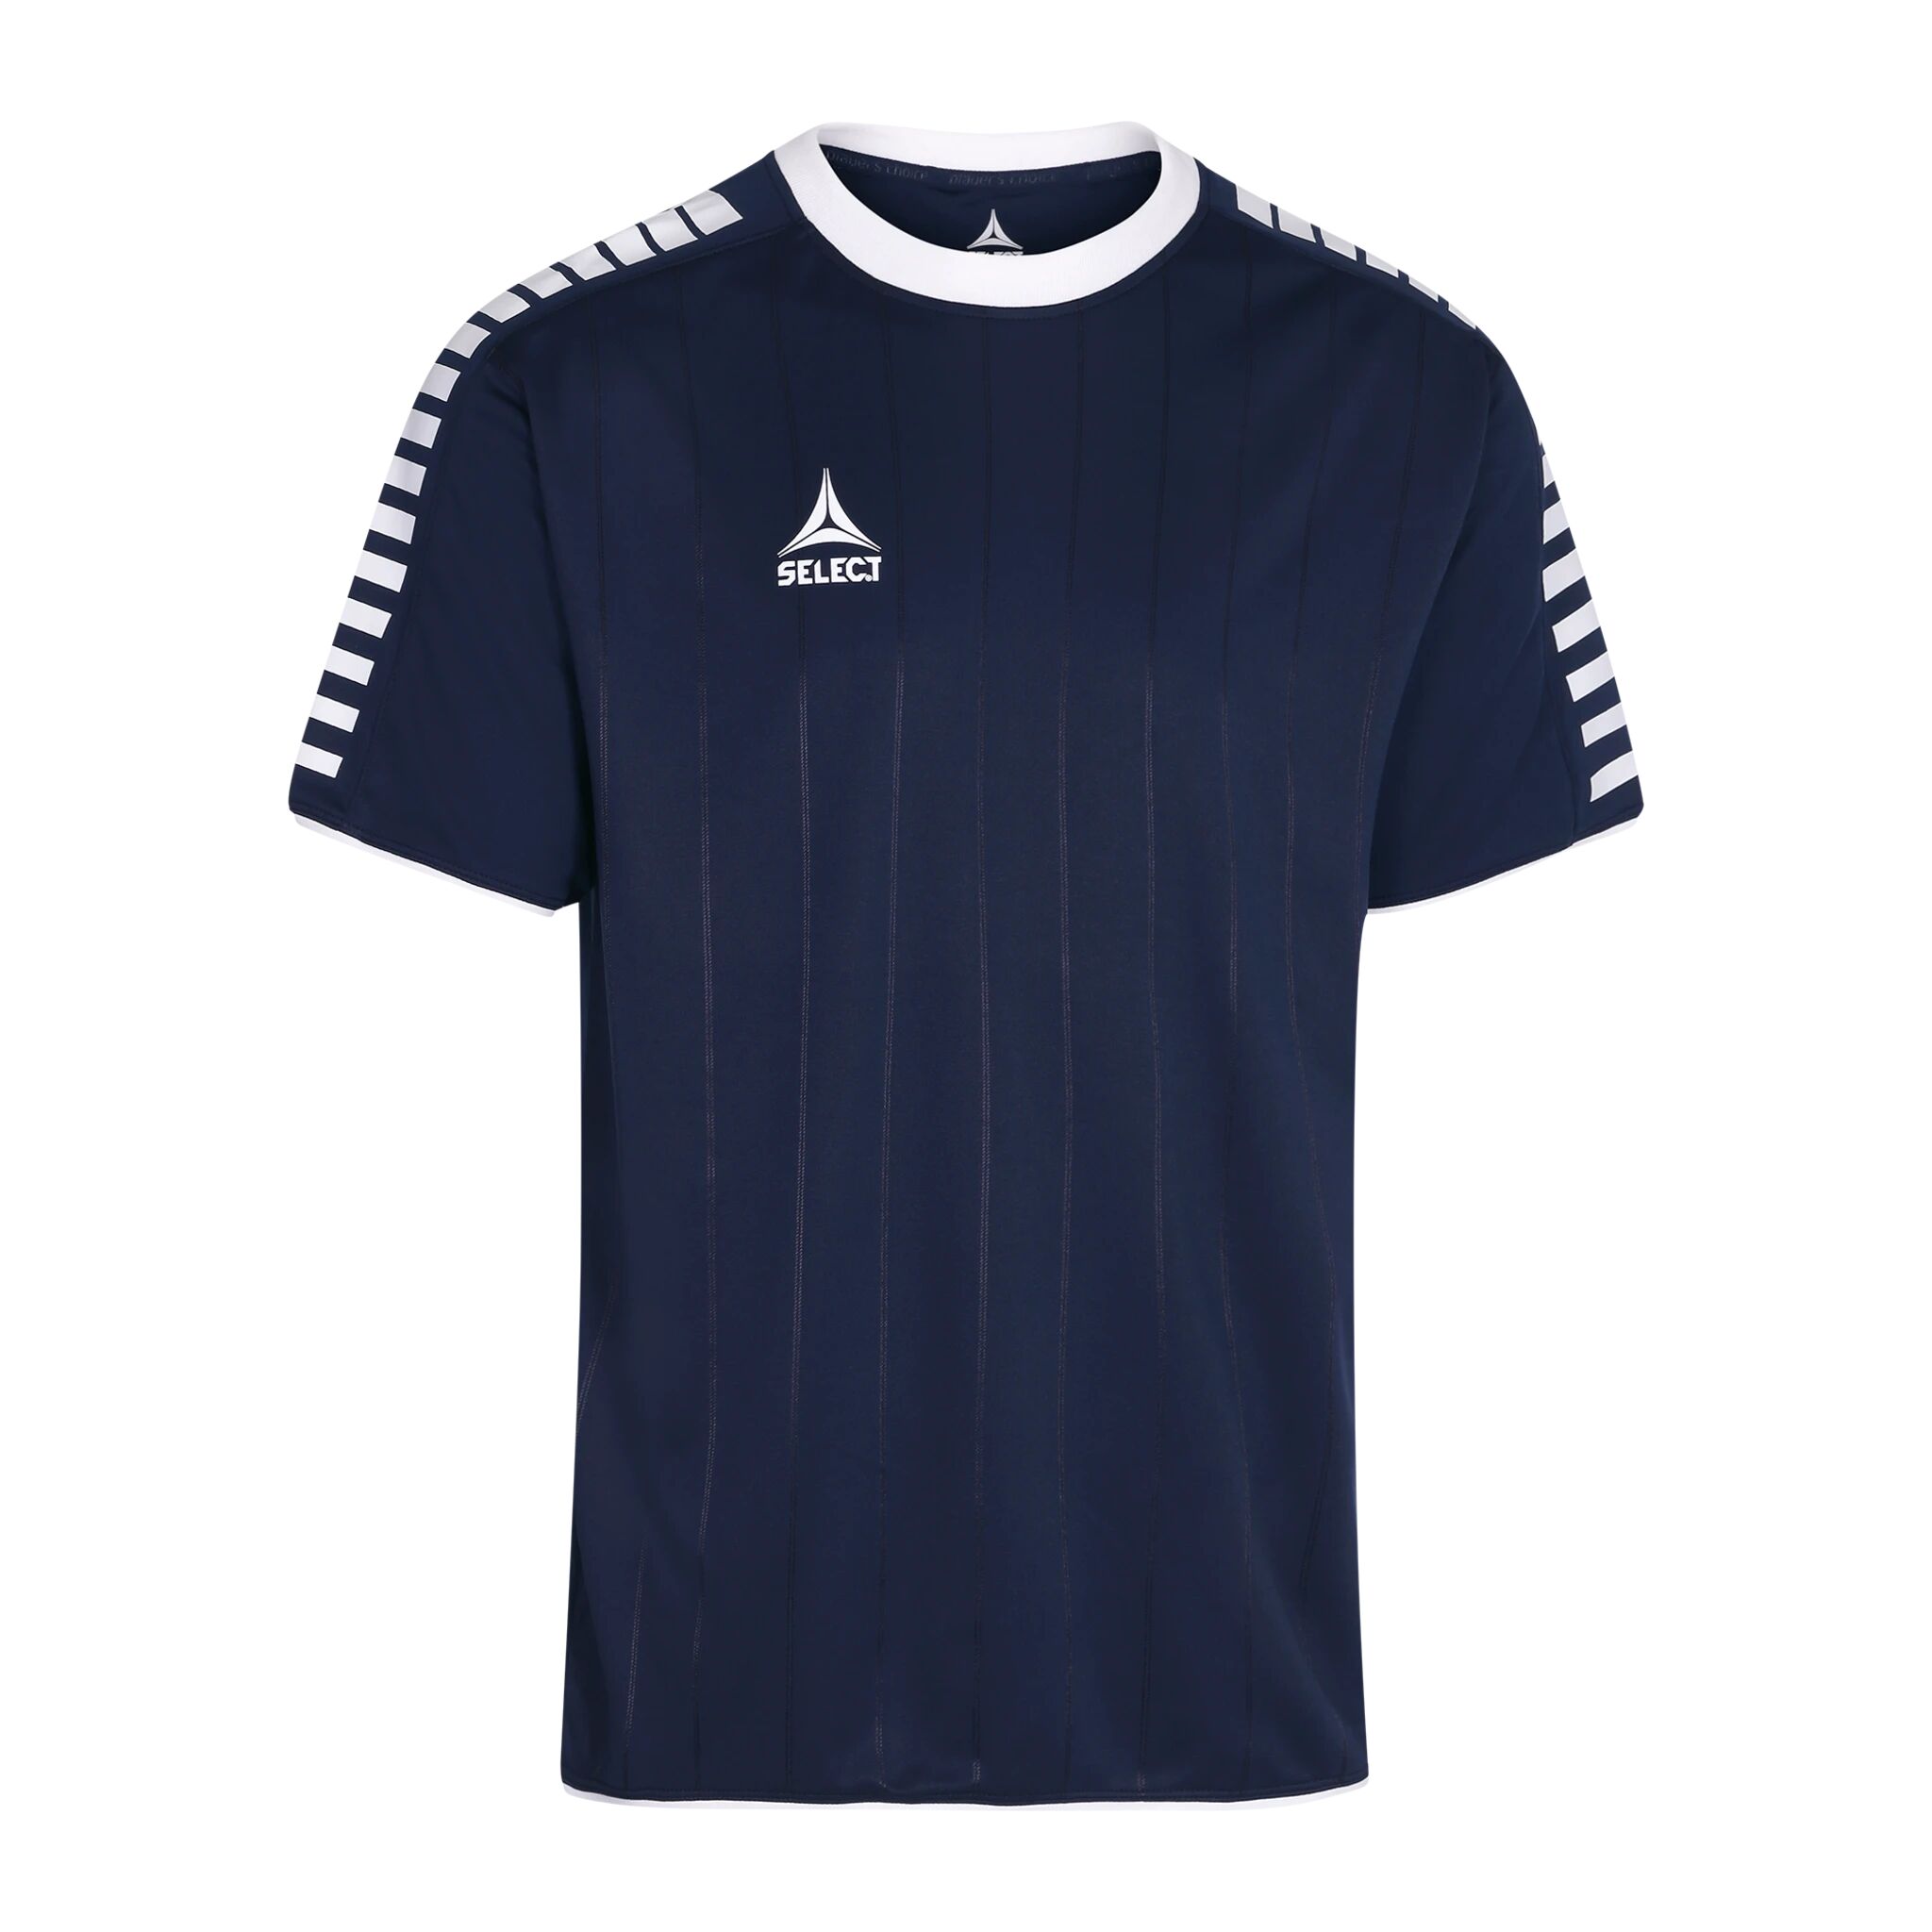 Select Player shirt S/S Argentina, fotballtrøye senior 128 navy